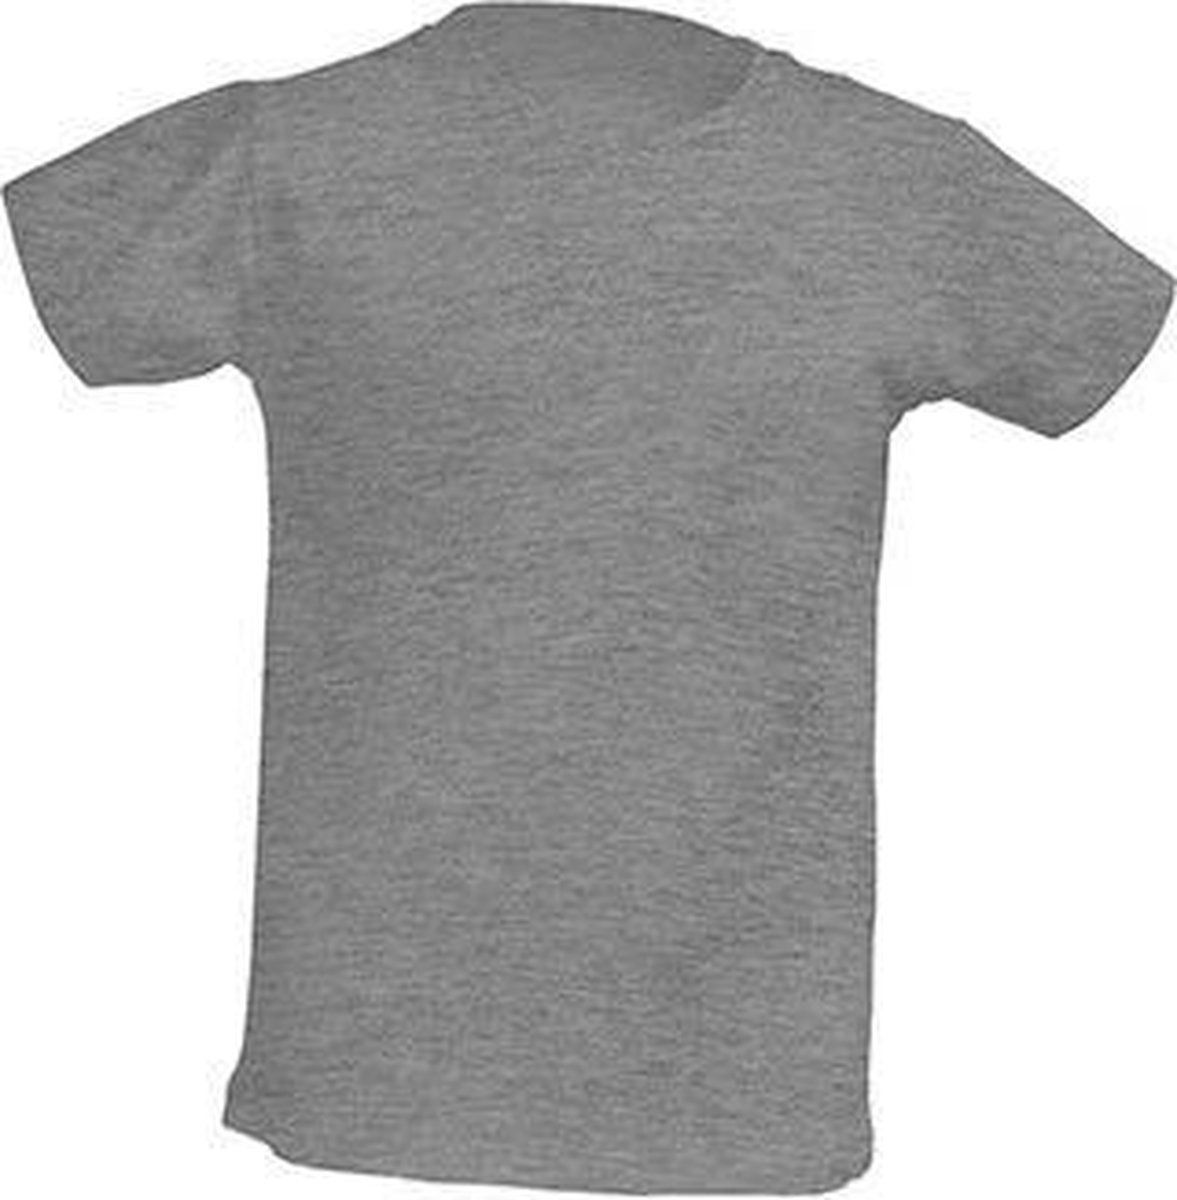 JHK Kinder t-shirt in grey melange maat 5-6 jaar (116) - set van 5 stuks